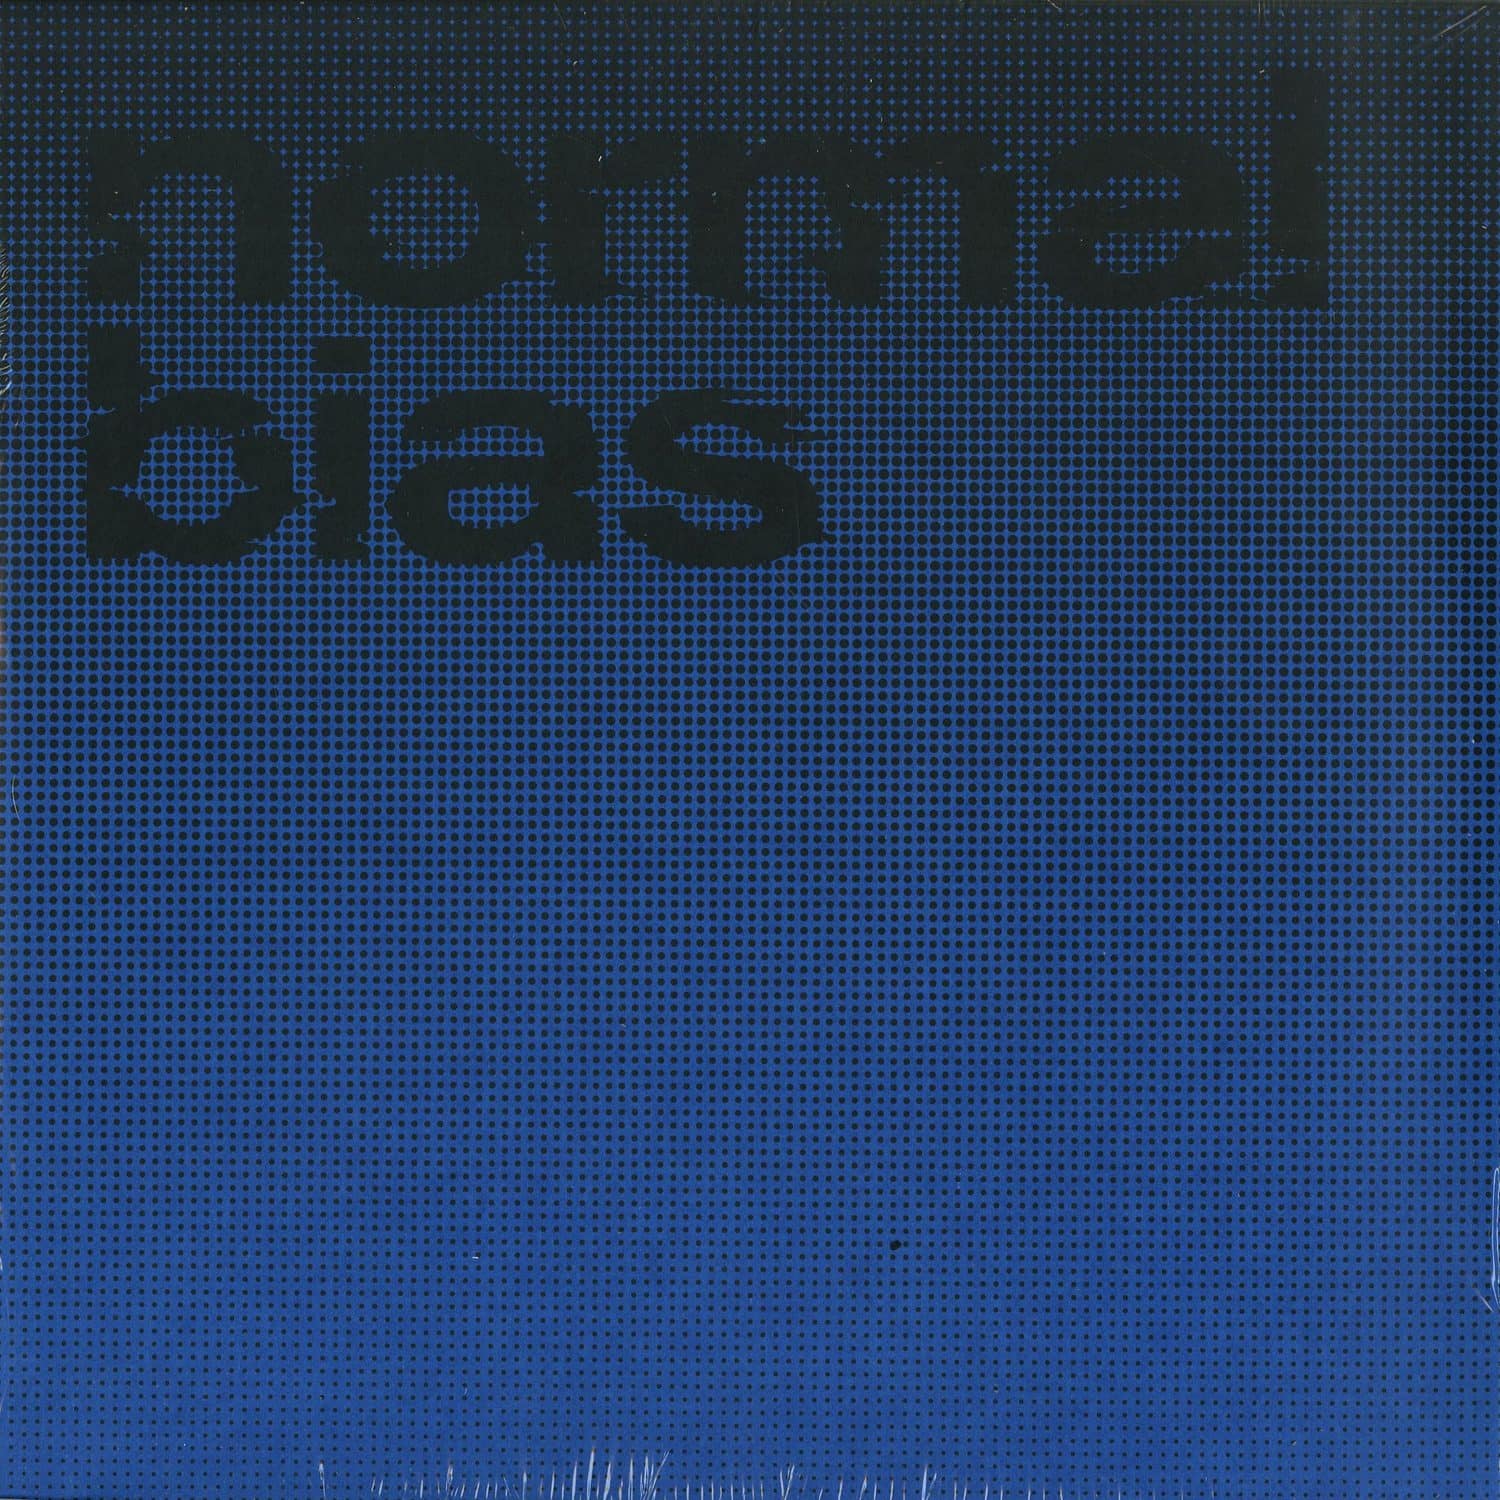 Normal Bias - NORMAL BIAS 